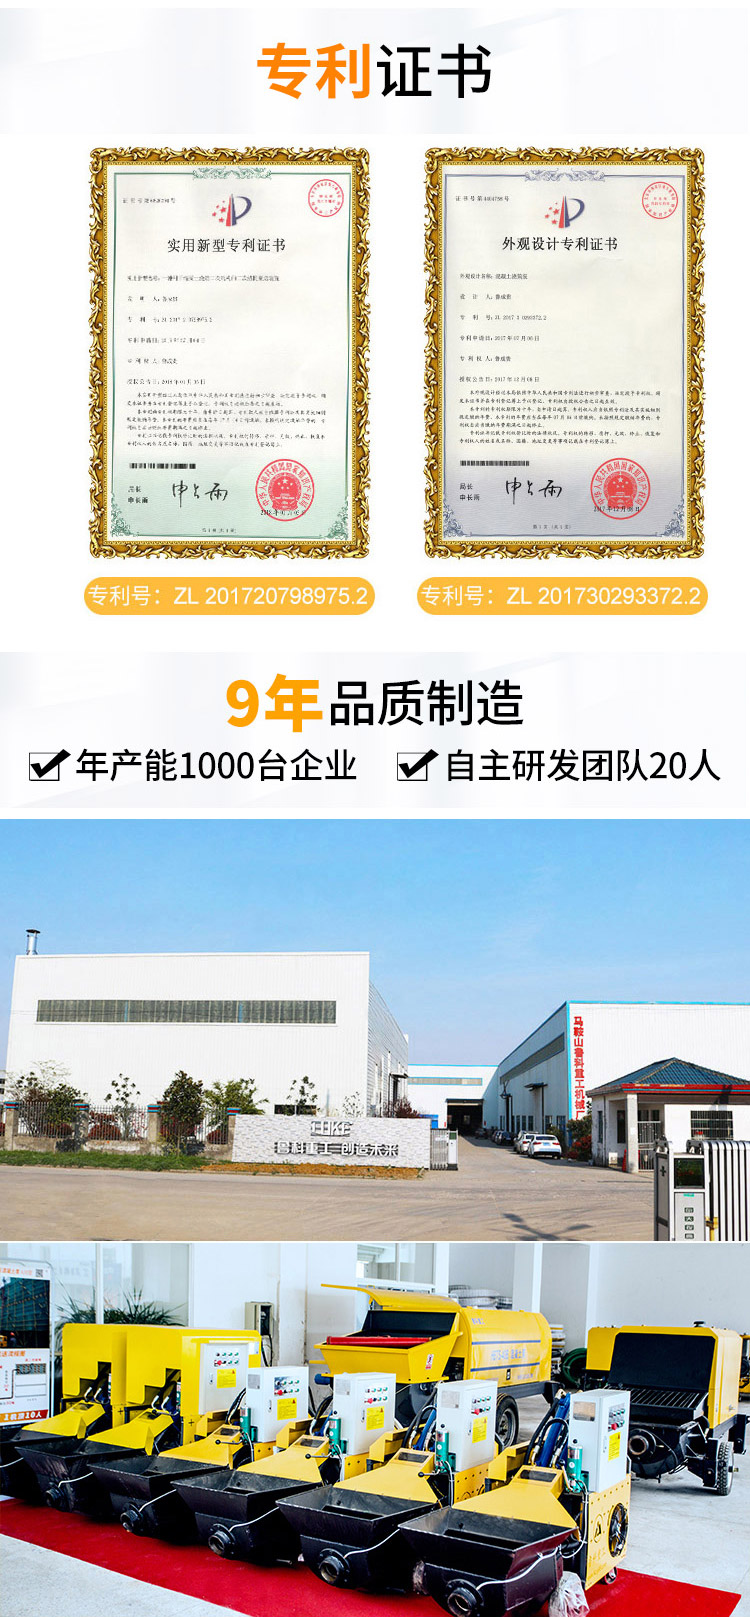 华润2平台二次结构泵官网.jpg